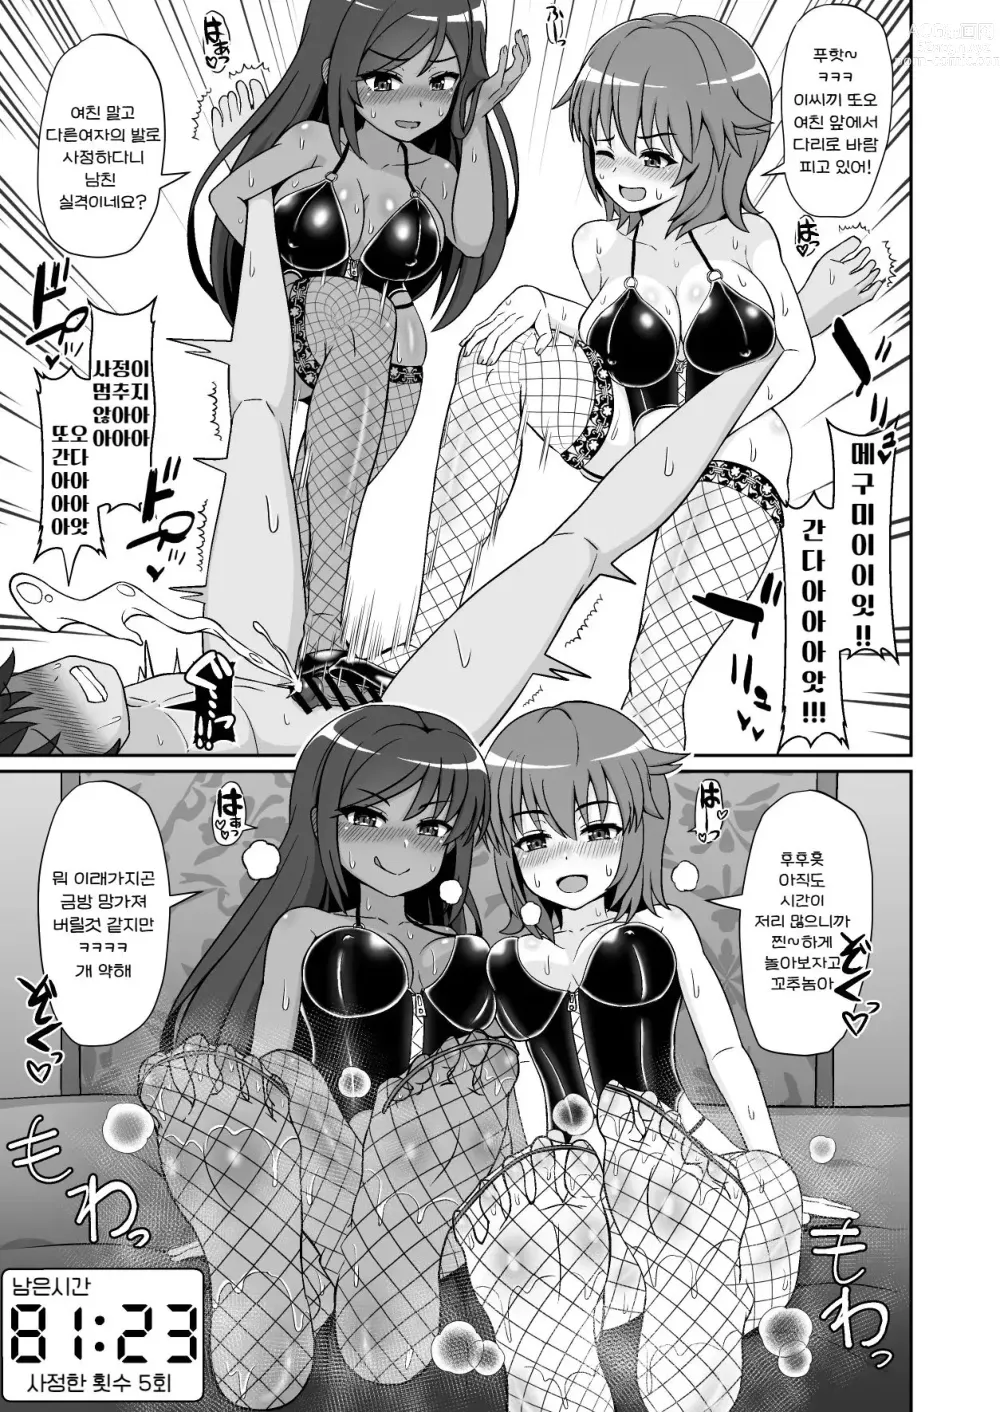 Page 10 of doujinshi 굉장한 테크닉을 갖춘 여배우들에게 범해져서 100분 내구성으로 그녀를 구하는 기획에 도전해 보았다!